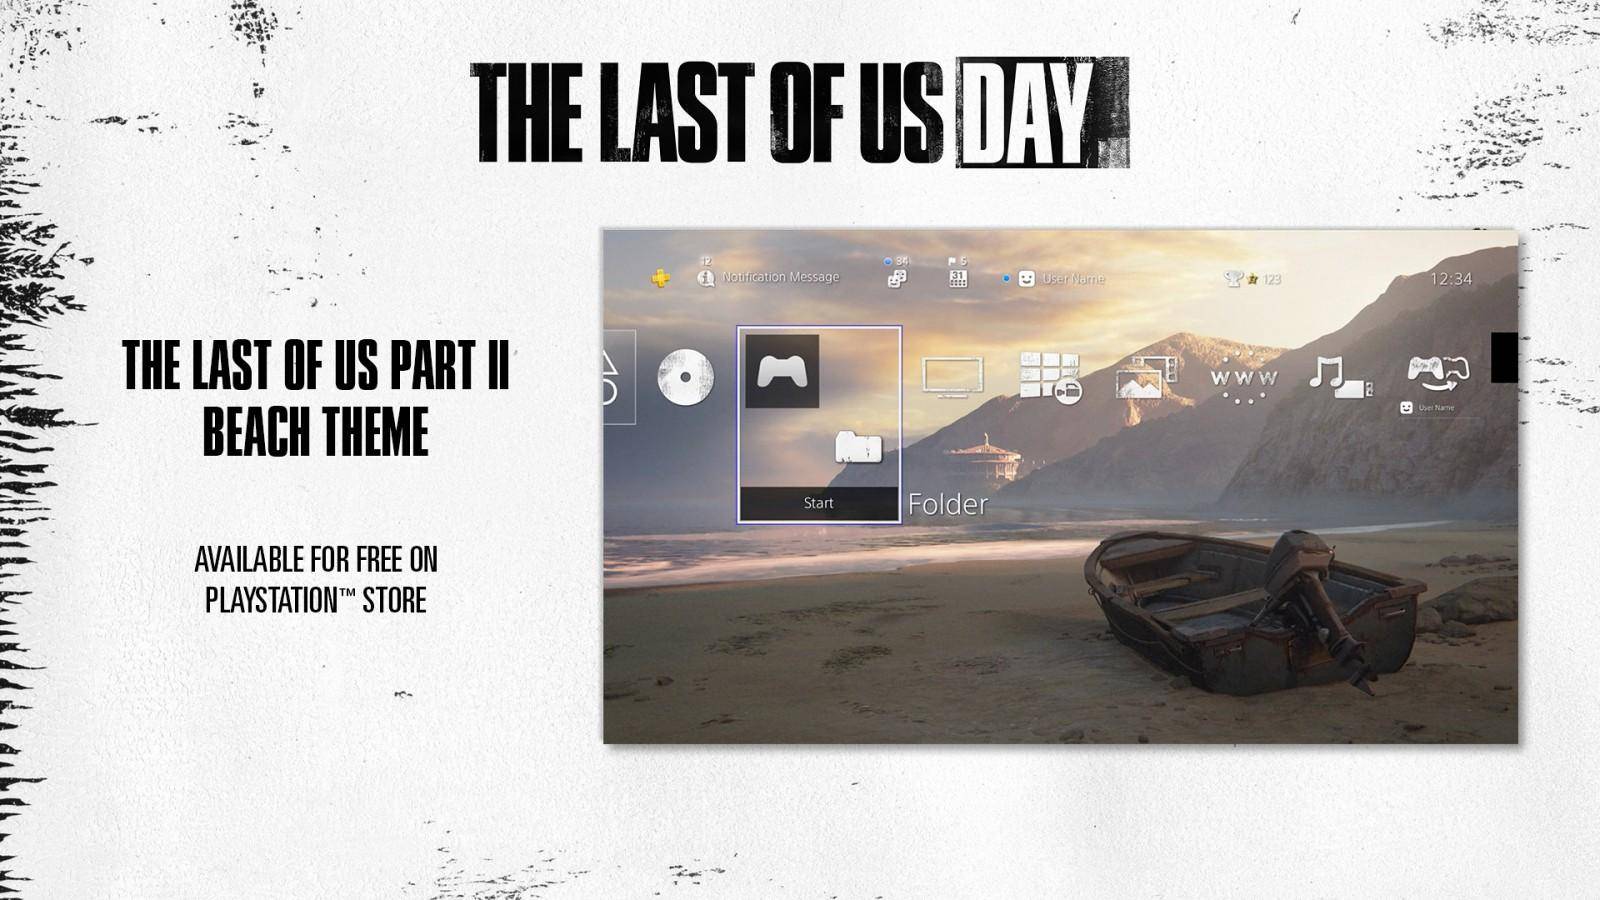 Se anuncia juego de mesa de The Last of Us 1